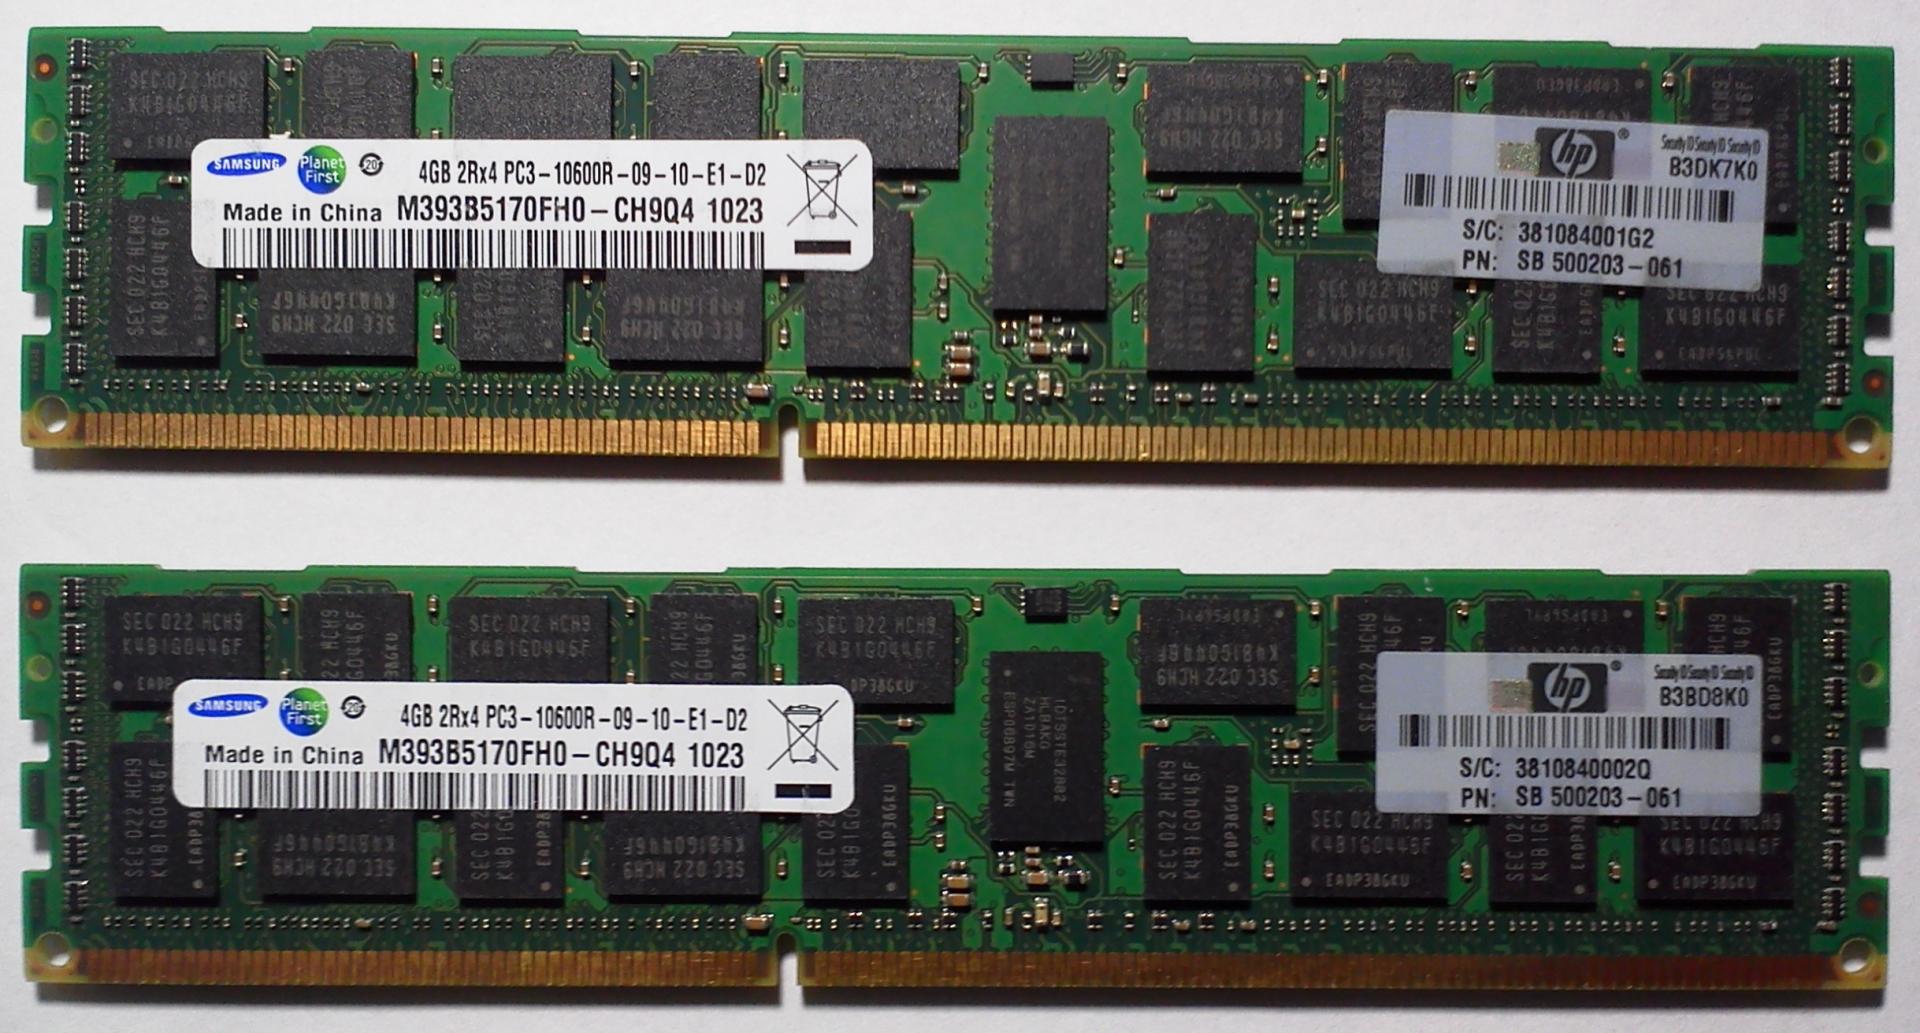 Серверная оперативная память ddr3. Память Samsung ddr3 2rx4 pc3 - 10600r 4 GB. Память Samsung ddr3 2rx4 pc3 - 10600r 4 GB тайминги. Серверная ОЗУ ddr3.